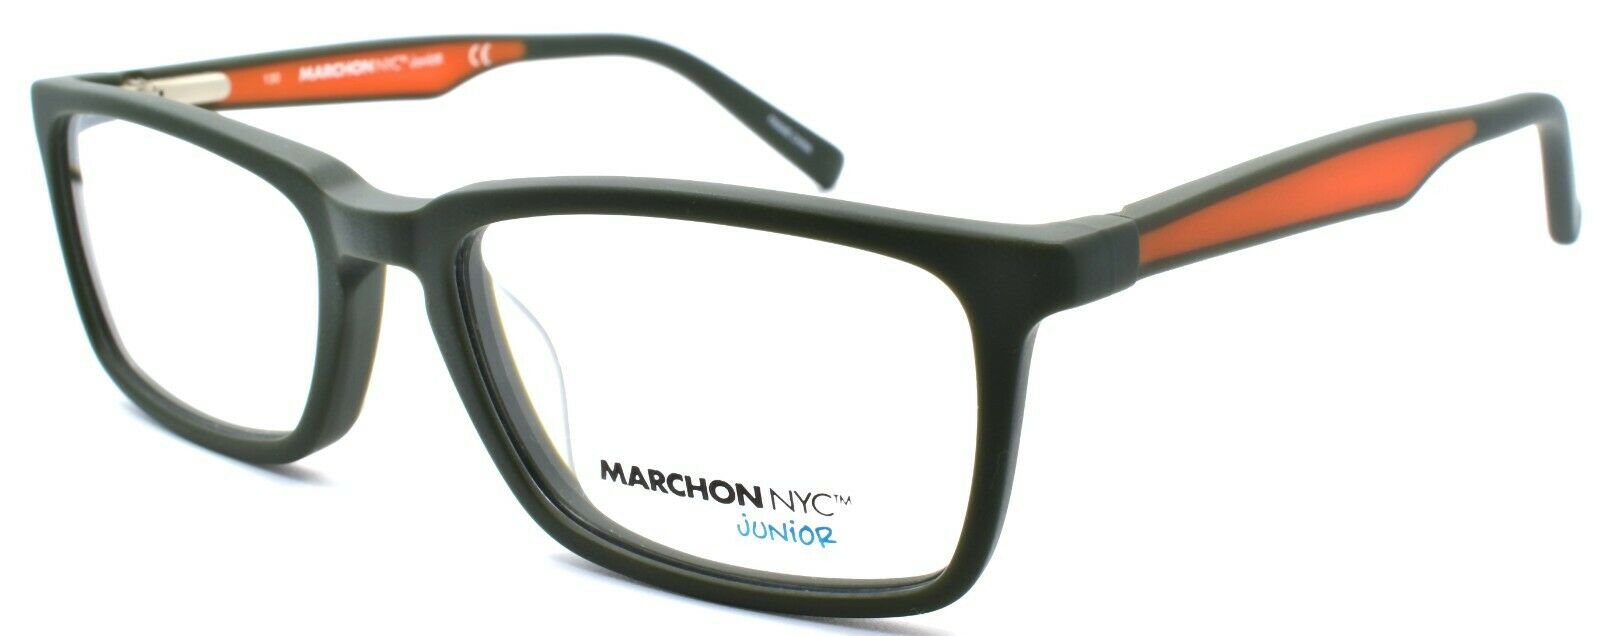 1-Marchon M-Moore Jr Kids Boys Eyeglasses Frames 48-15-130 Matte Olive-886895469869-IKSpecs